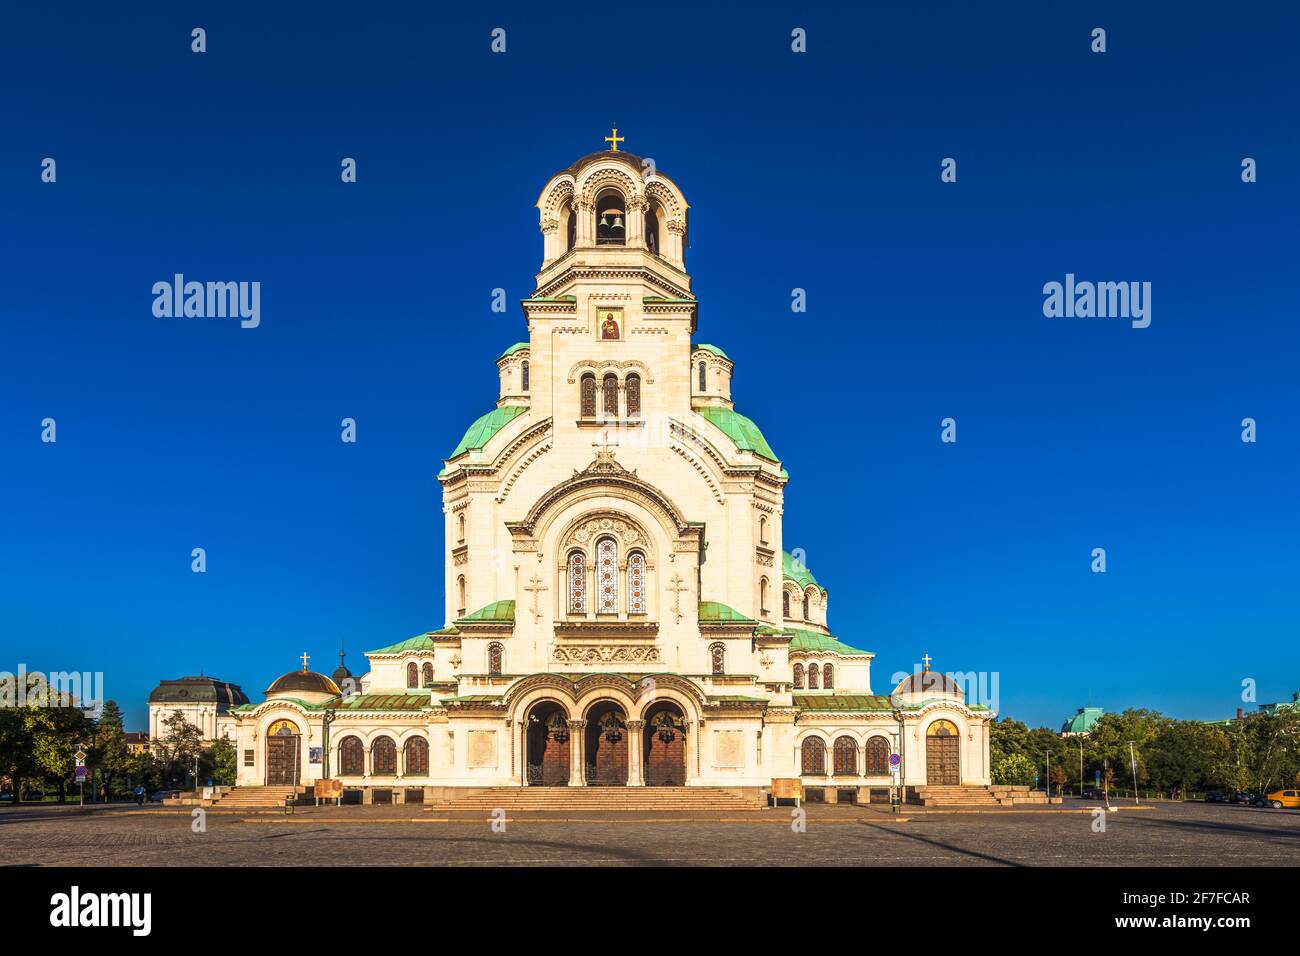 Alexander Nevsky temple Stock Photo